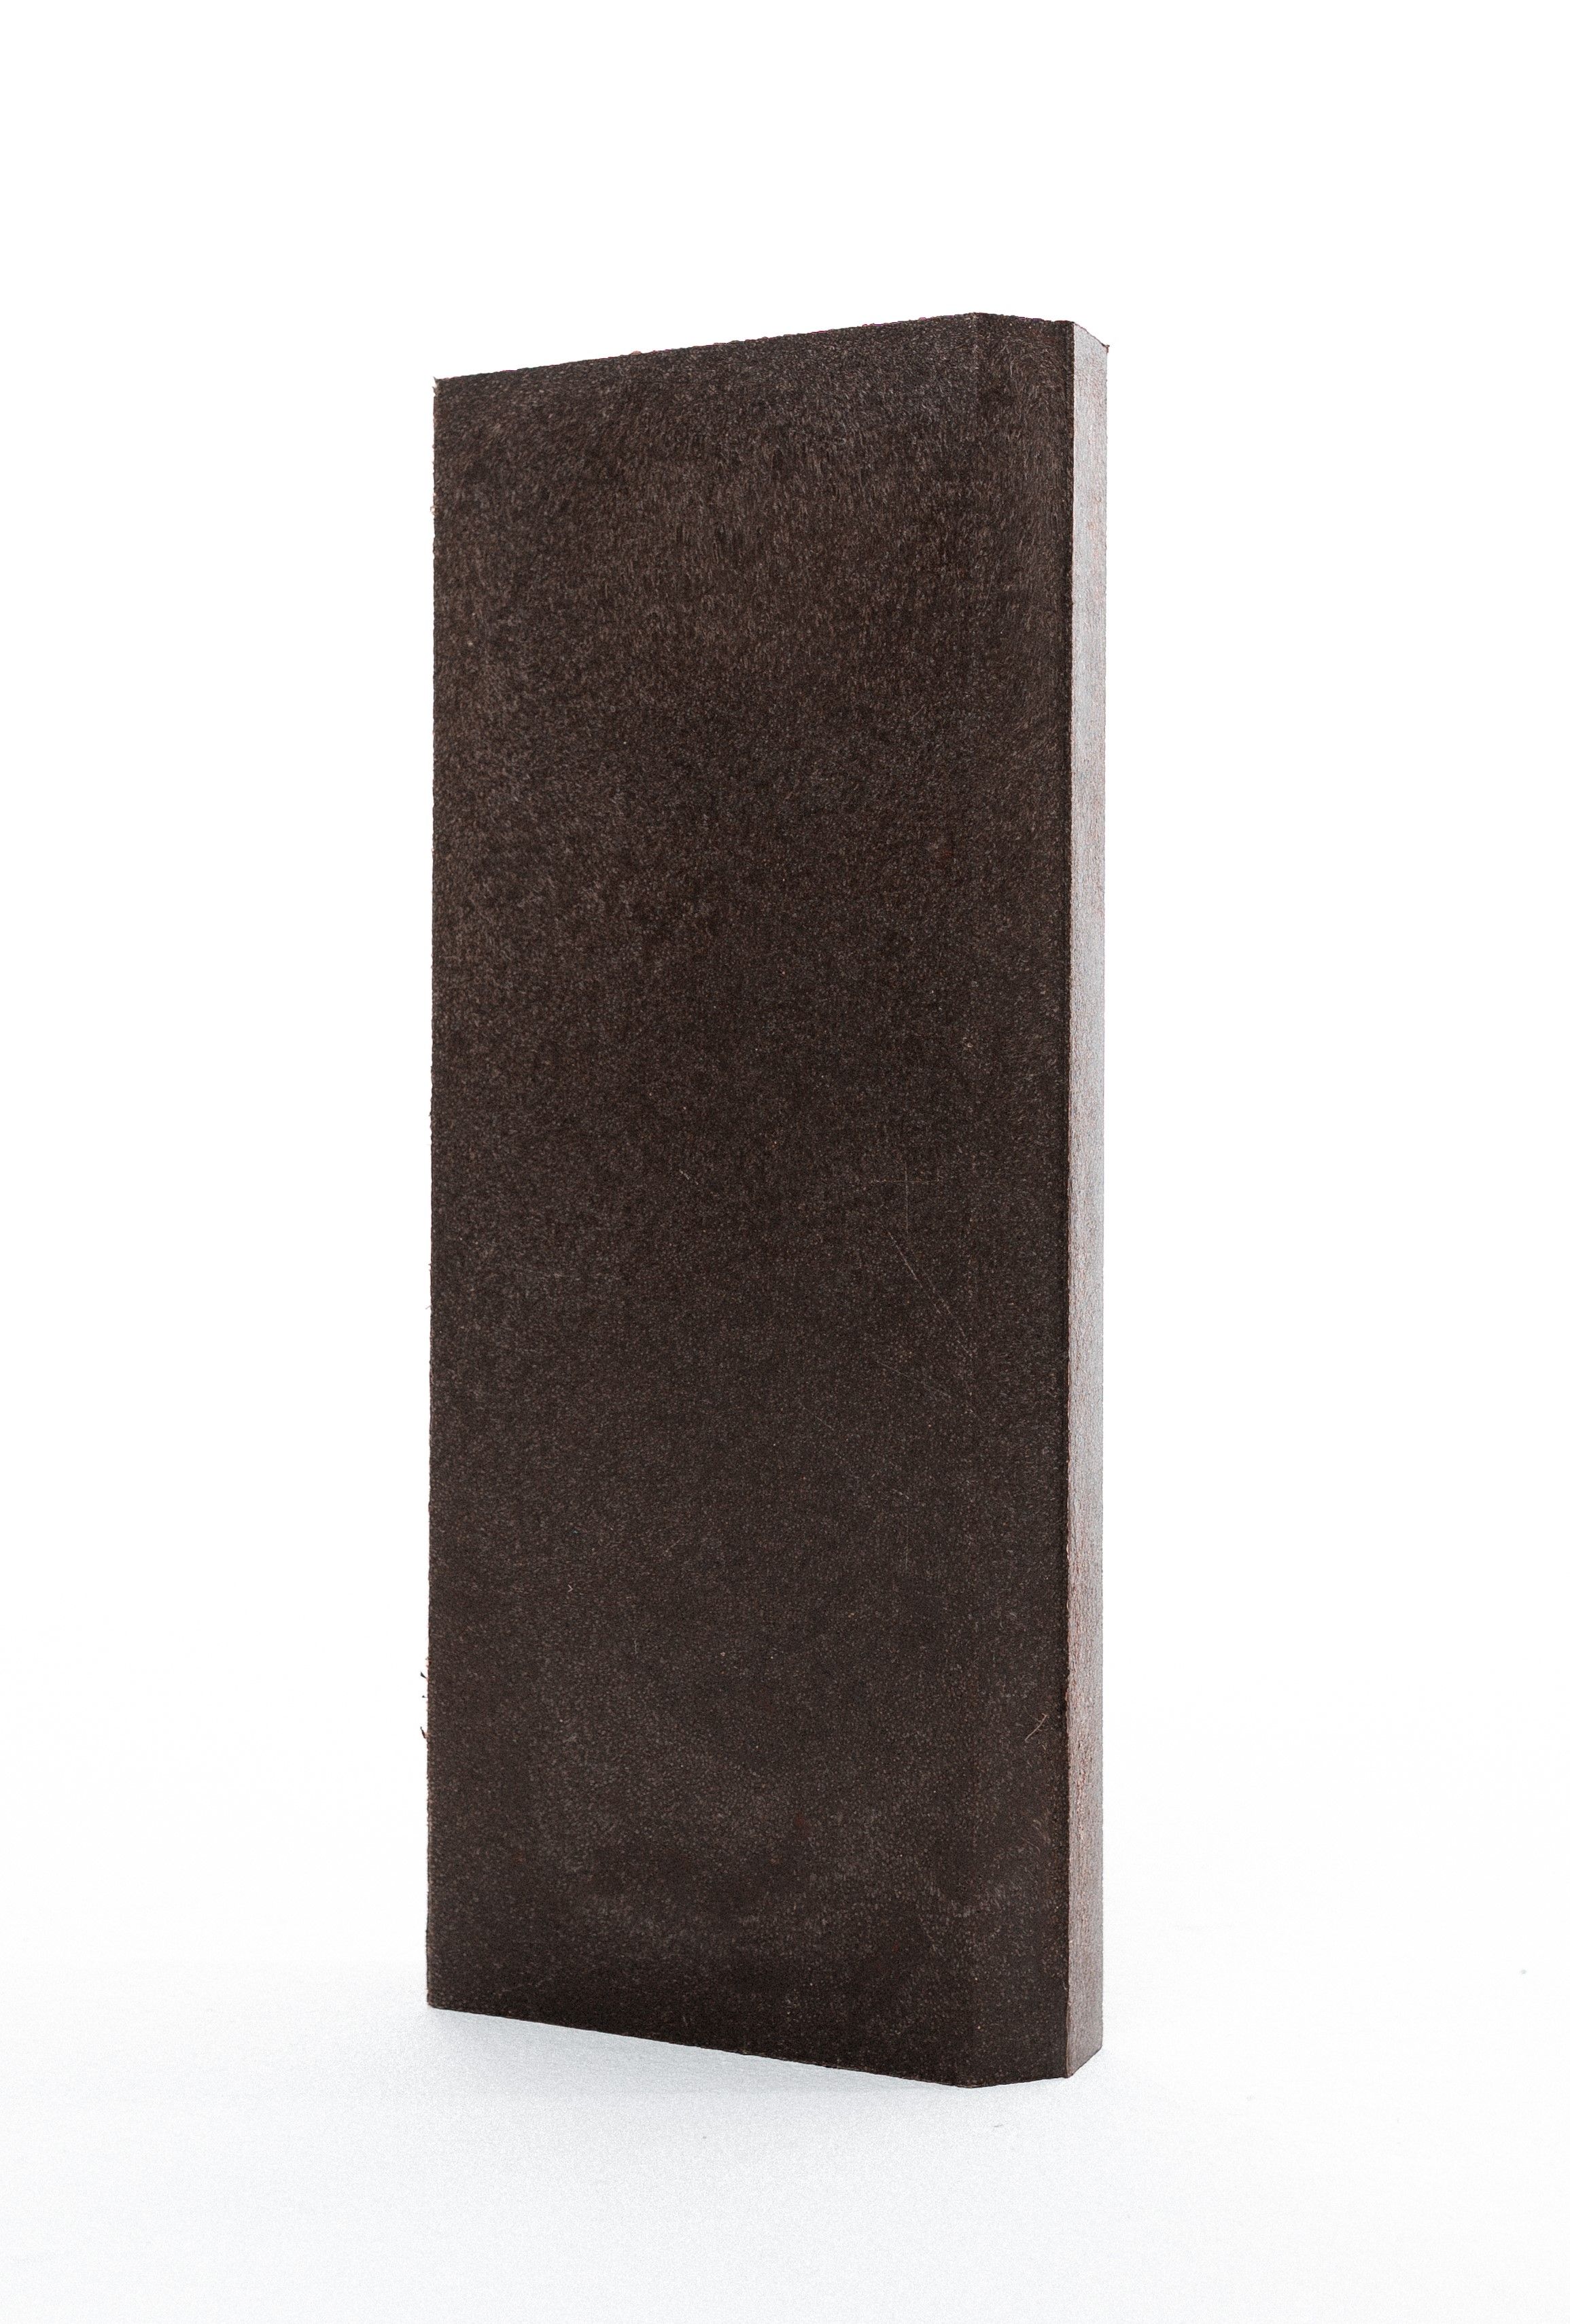 БордюртротуарныйполимерпесчаныйZEROpolymer,500х200х50мм,2штвупаковке,коричневый